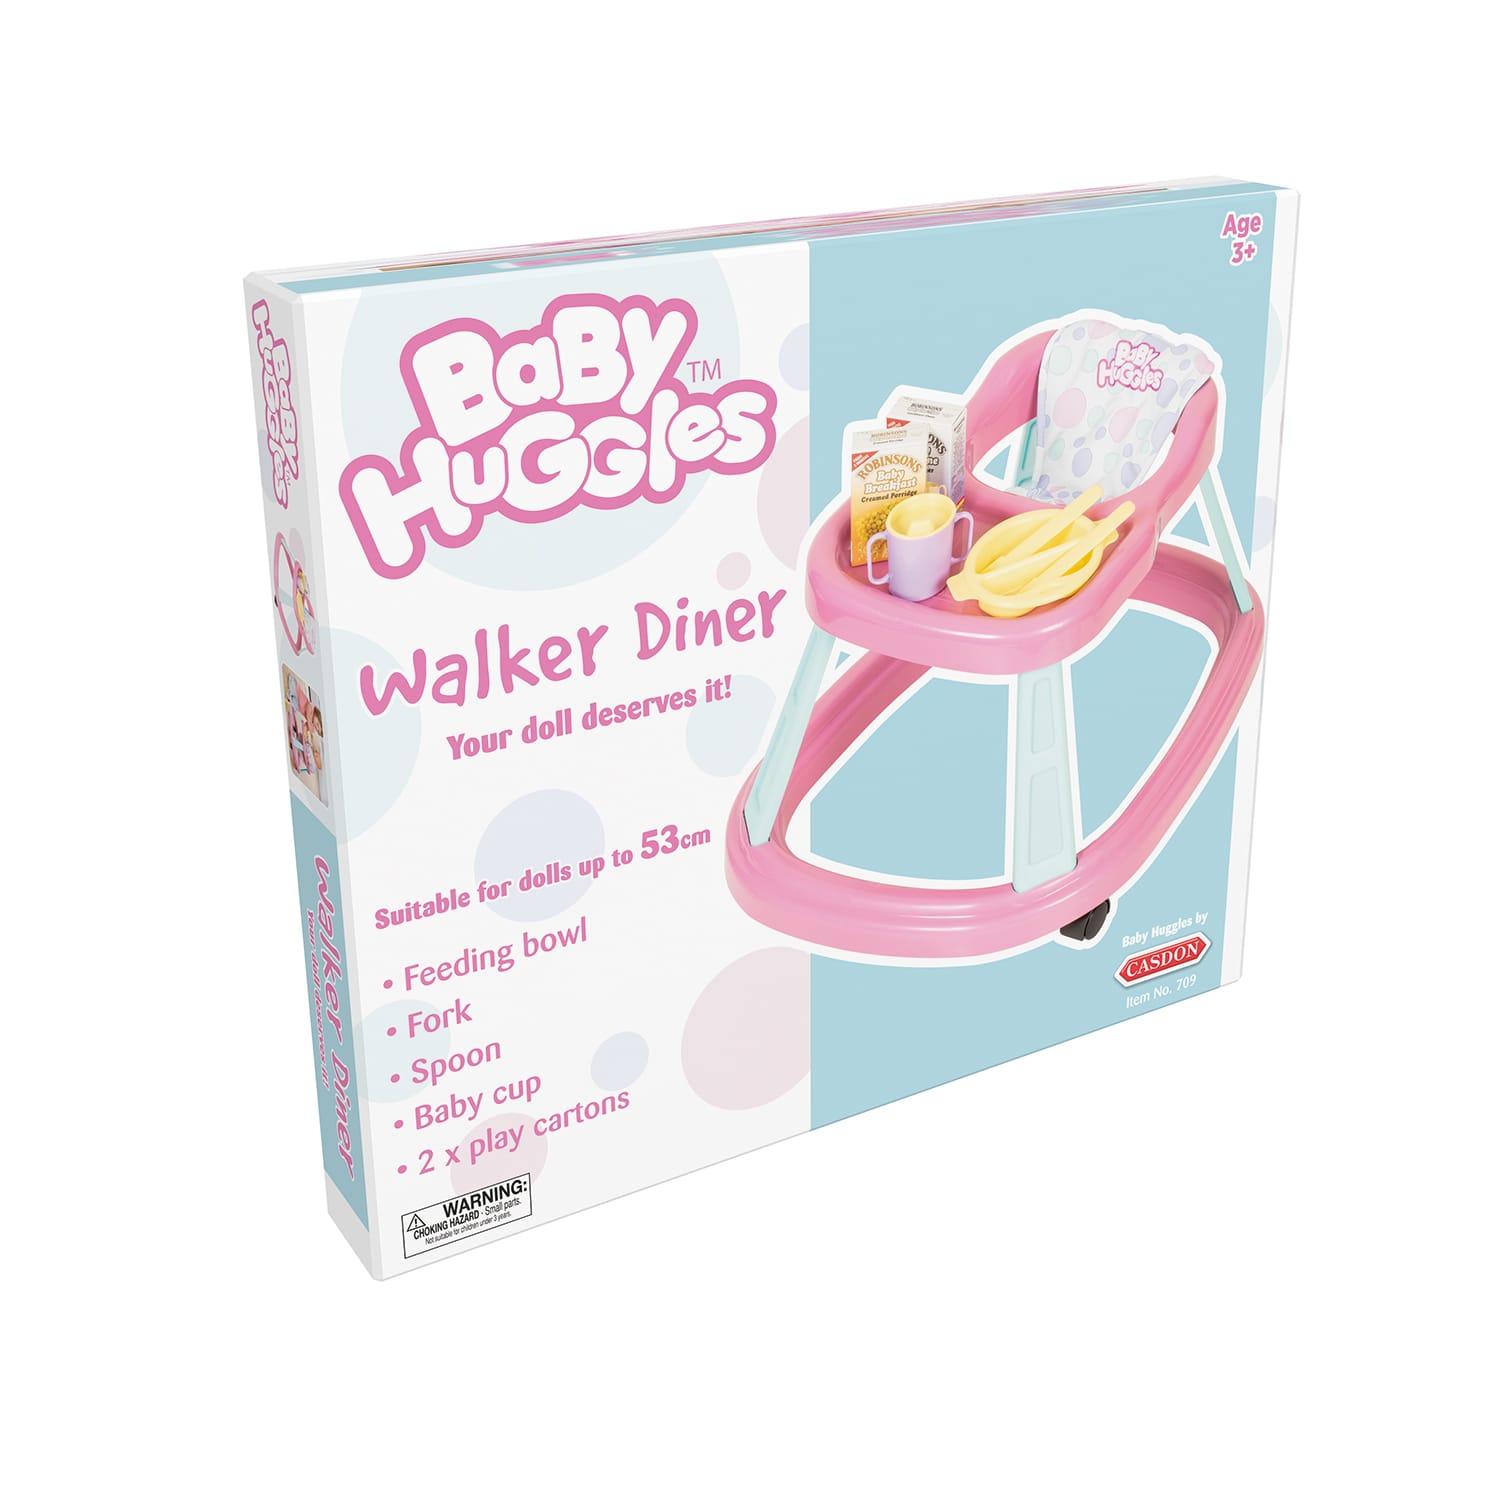 Casdon Baby Huggles Walker Diner Rose pour poupées jusqu'à 53 cm 